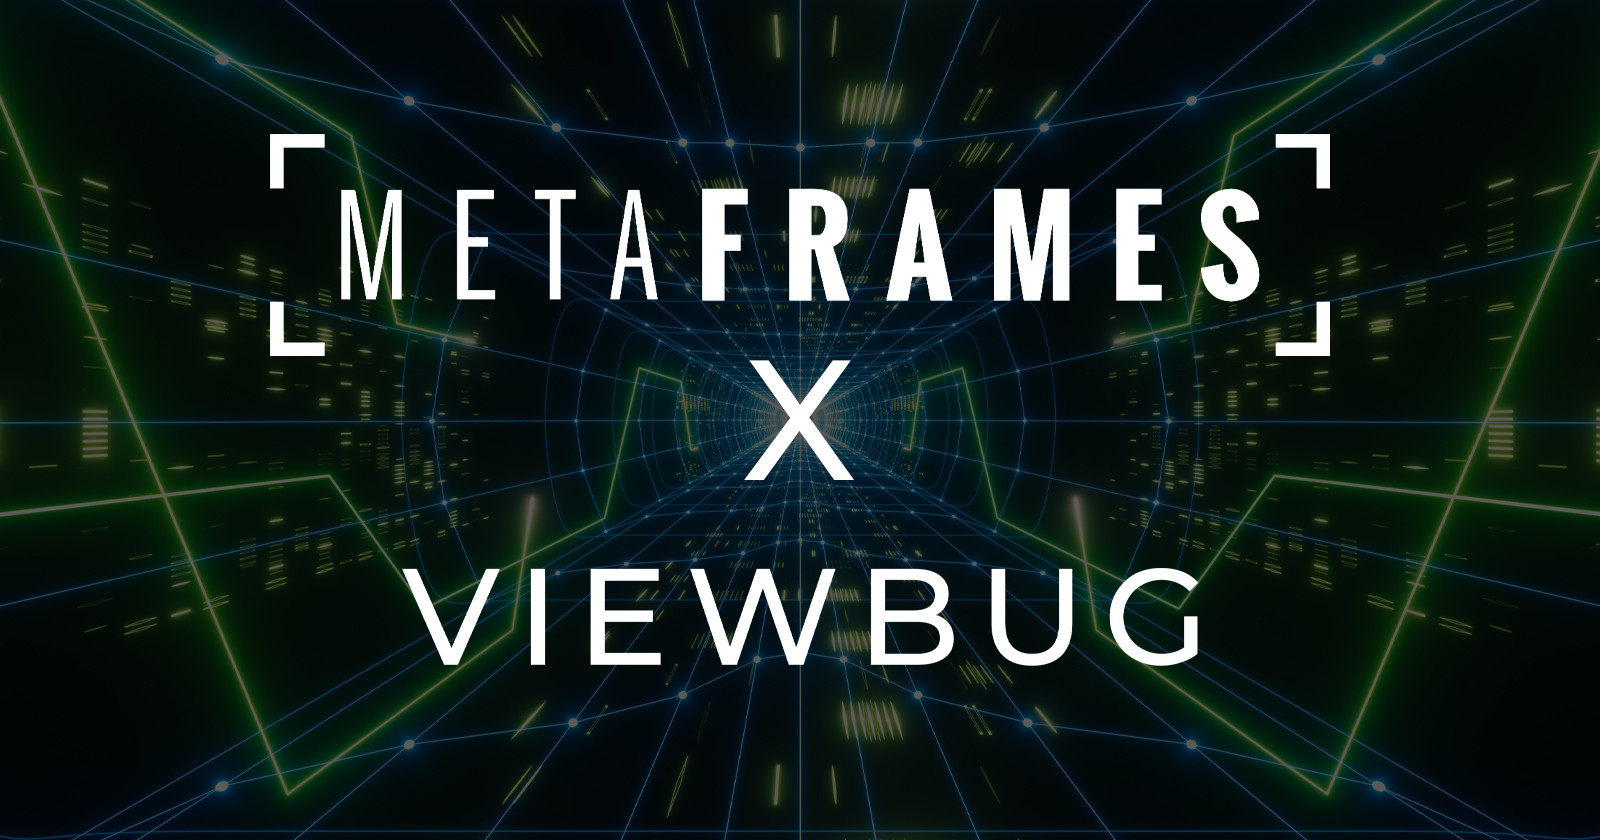  viewbug partners metaframes enable nft minting 